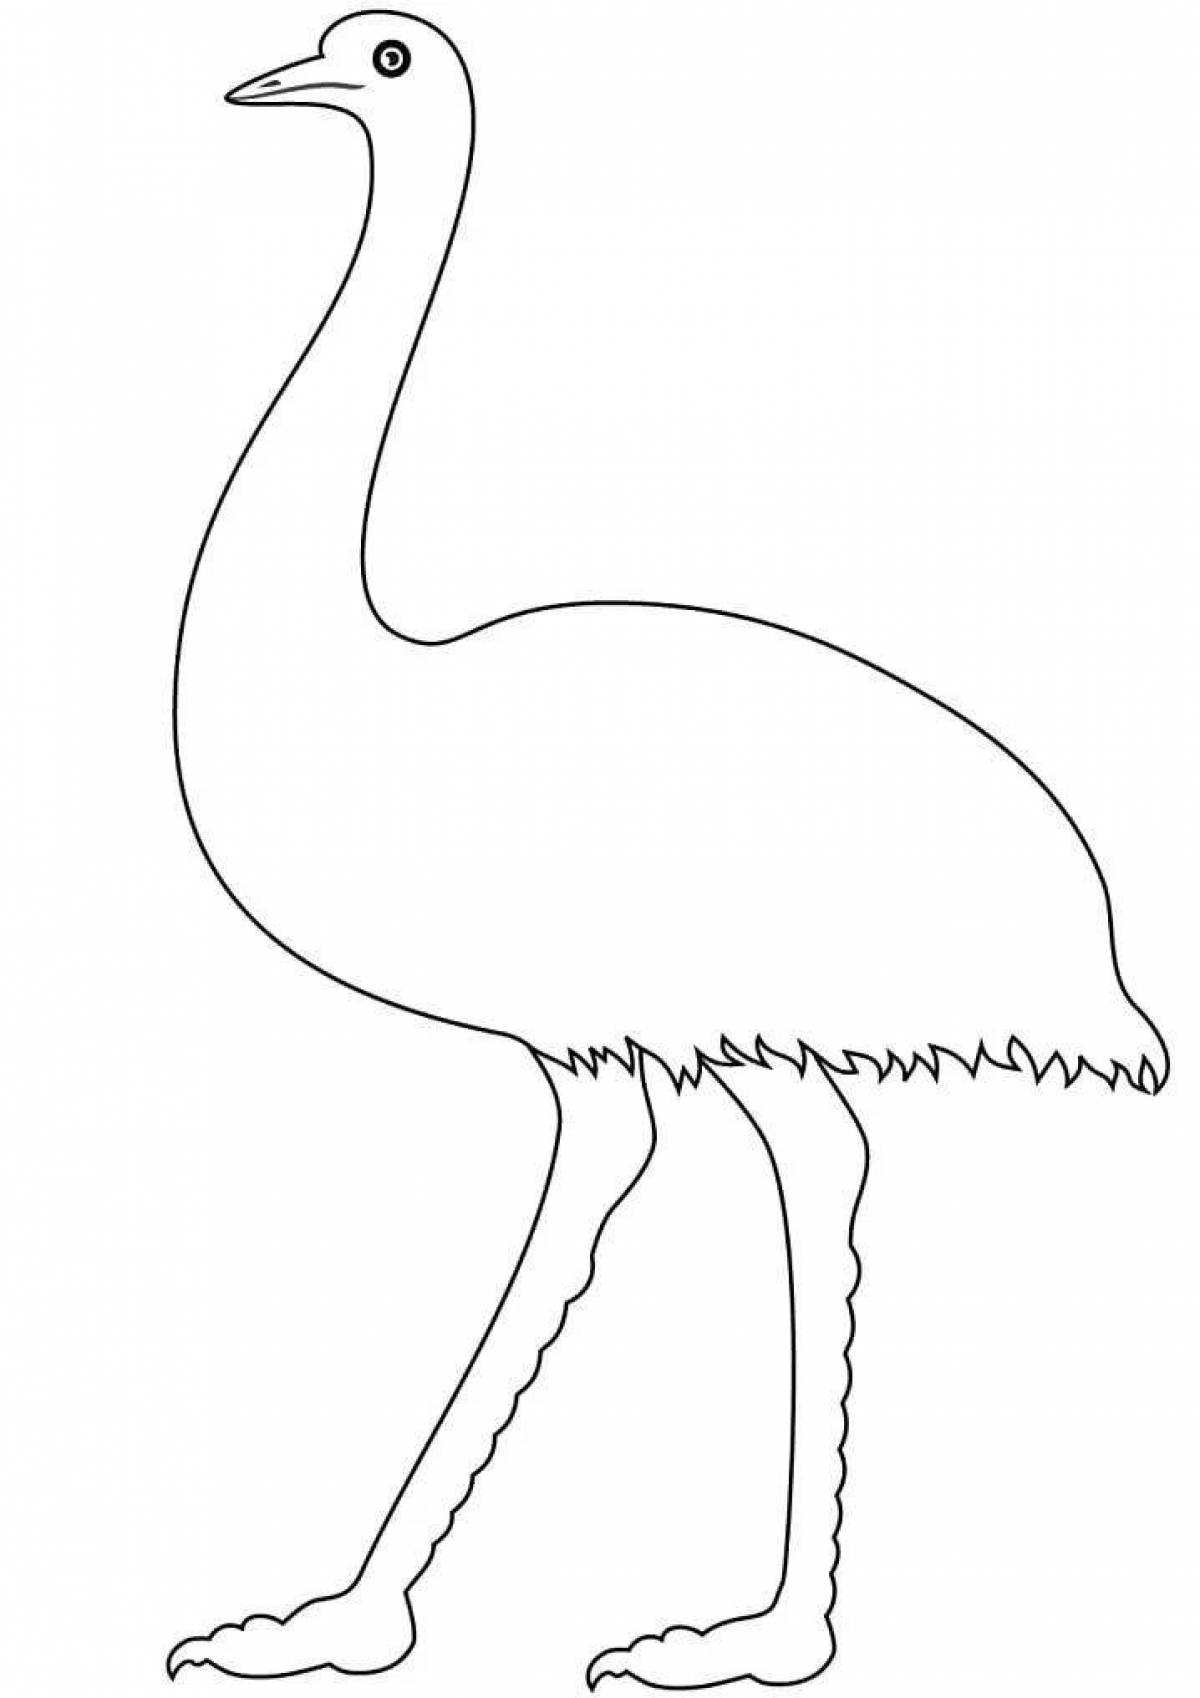 Шаблон страуса для рисования